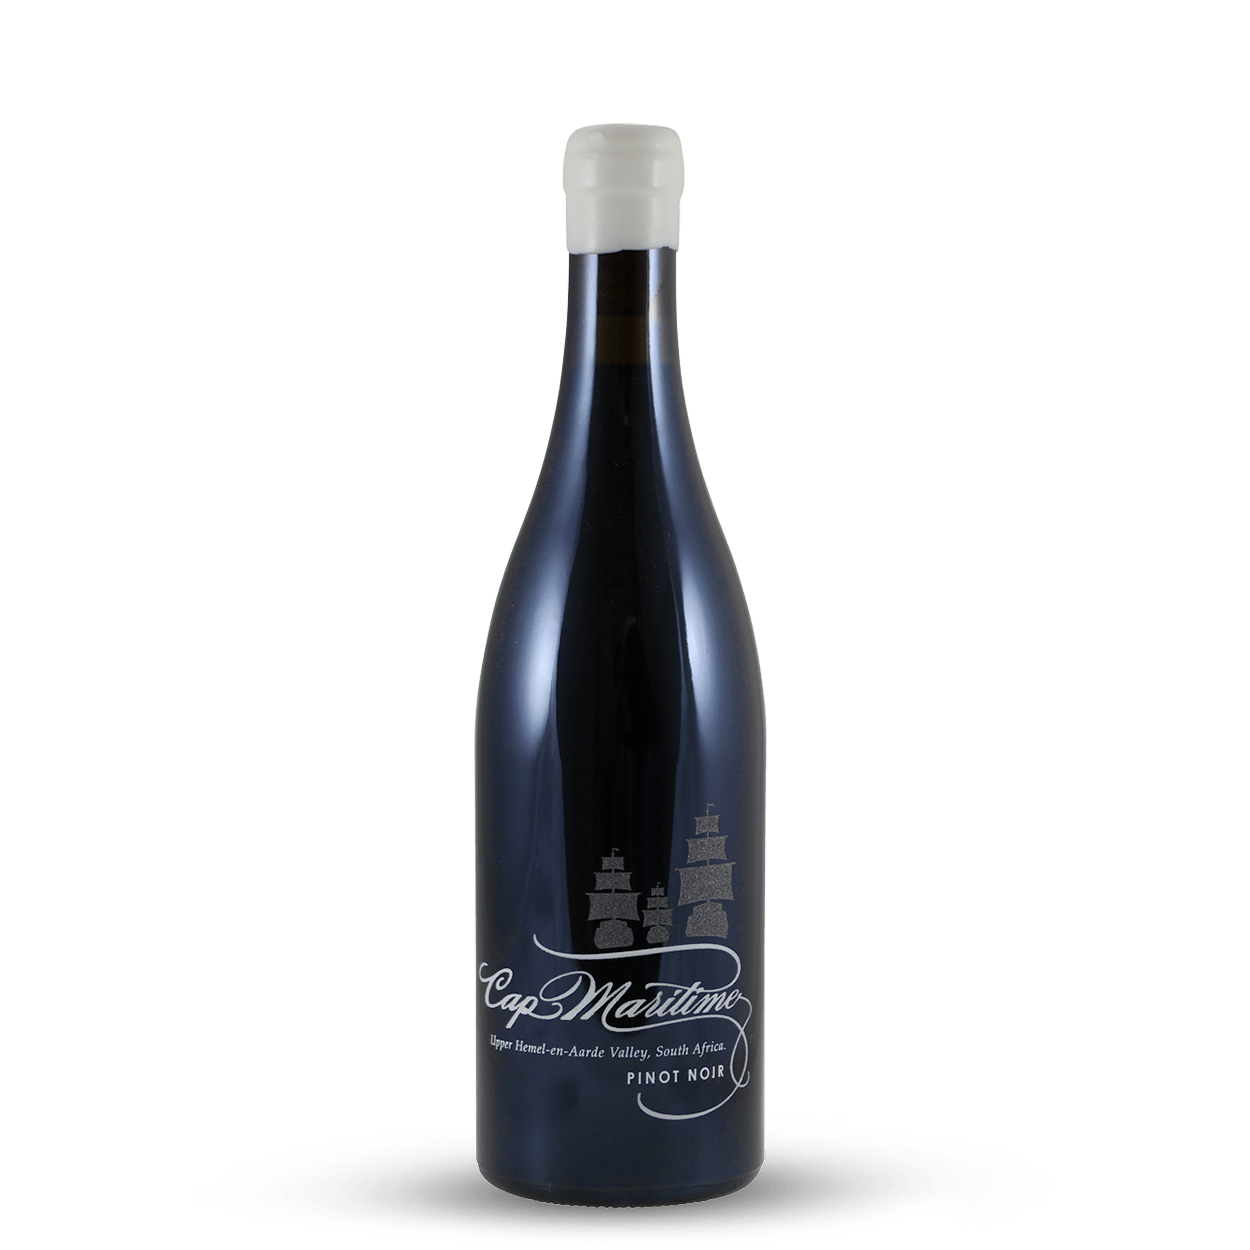 Boekenhoutskloof Cap Maritime Pinot Noir 2019